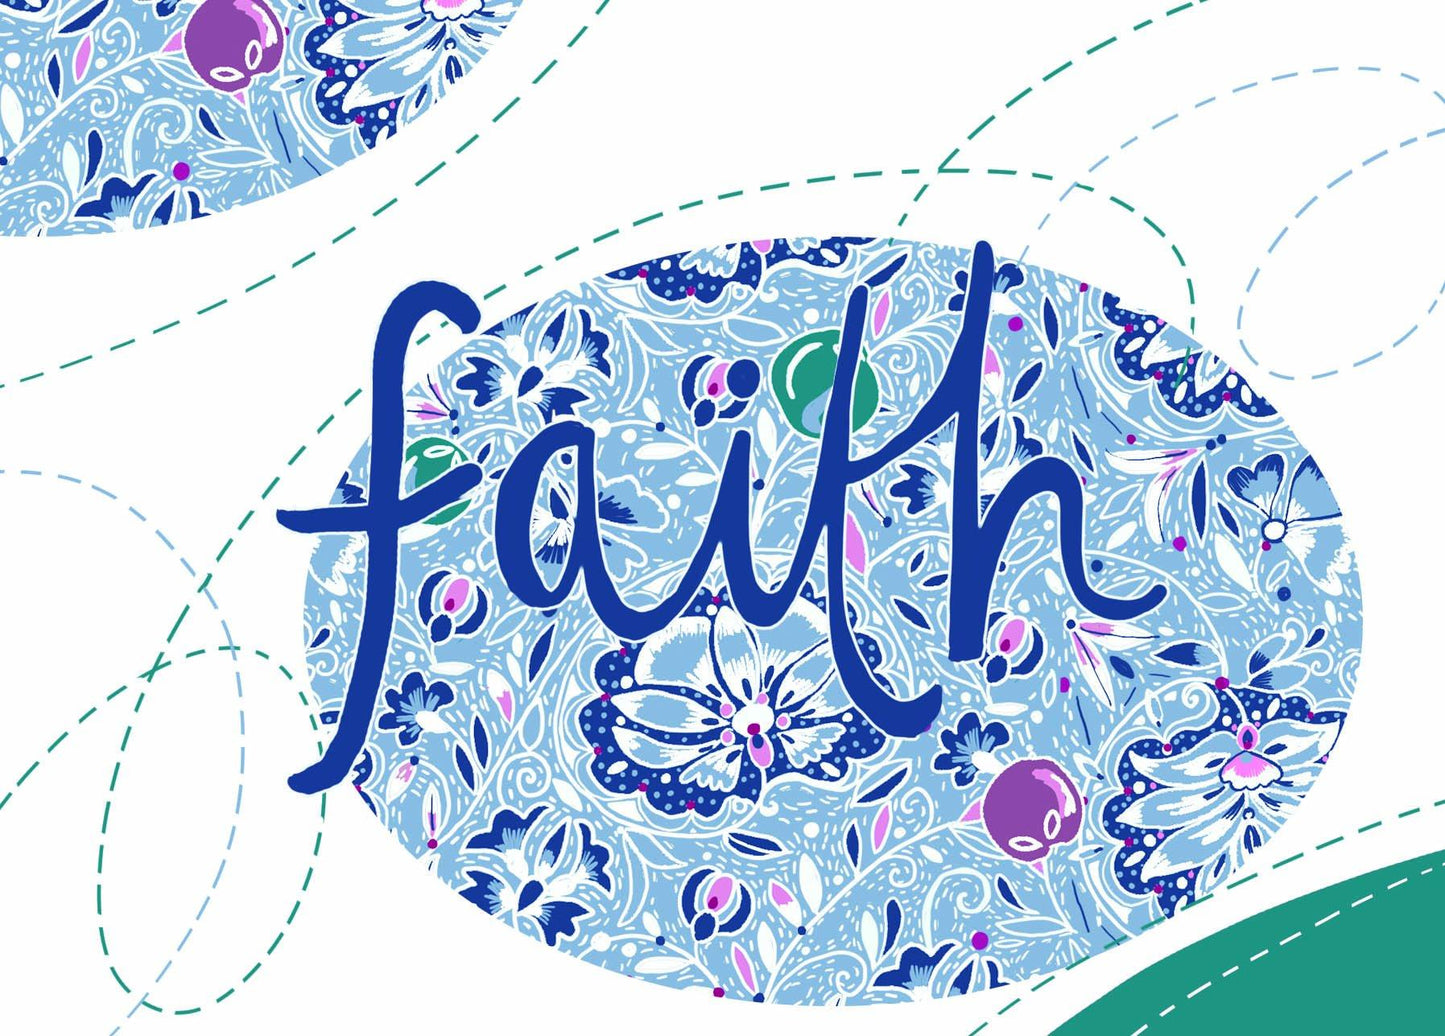 "Faith" by Emily Kelly - Print